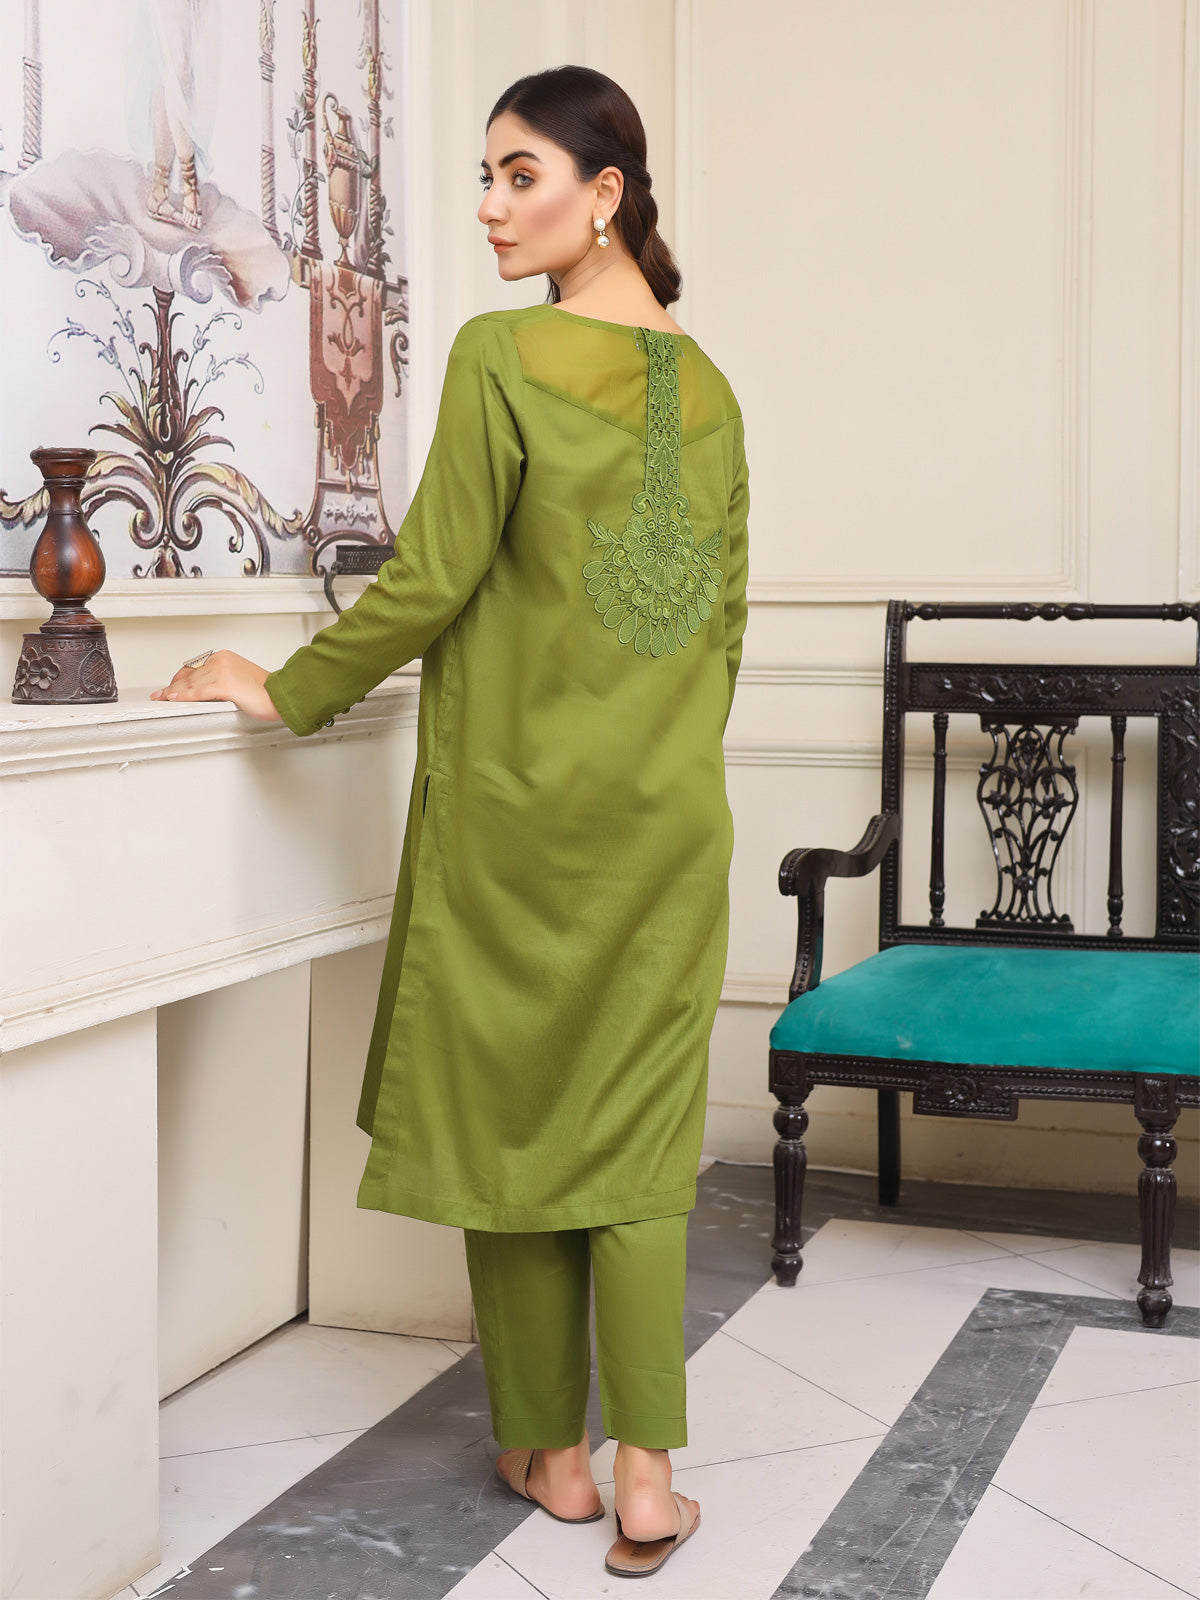 Green 2-piece suit for versatile style." LTL 7862228